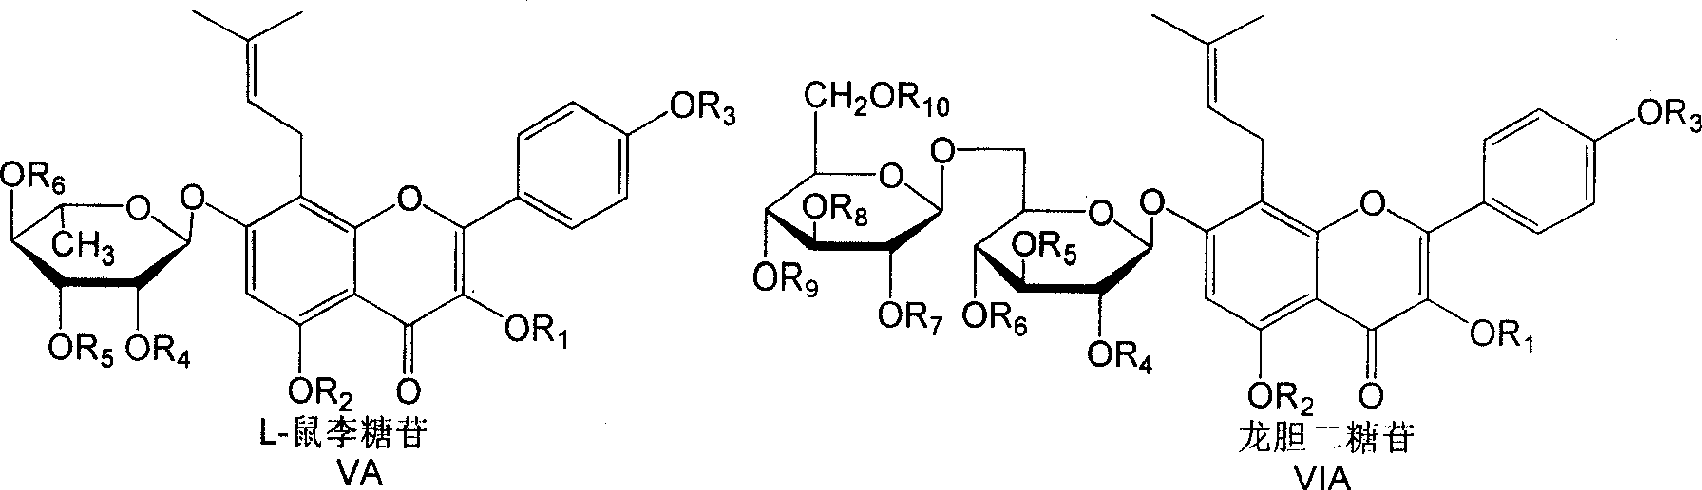 Isoamylene radical chromocor derivative, preparation method and uses thereof